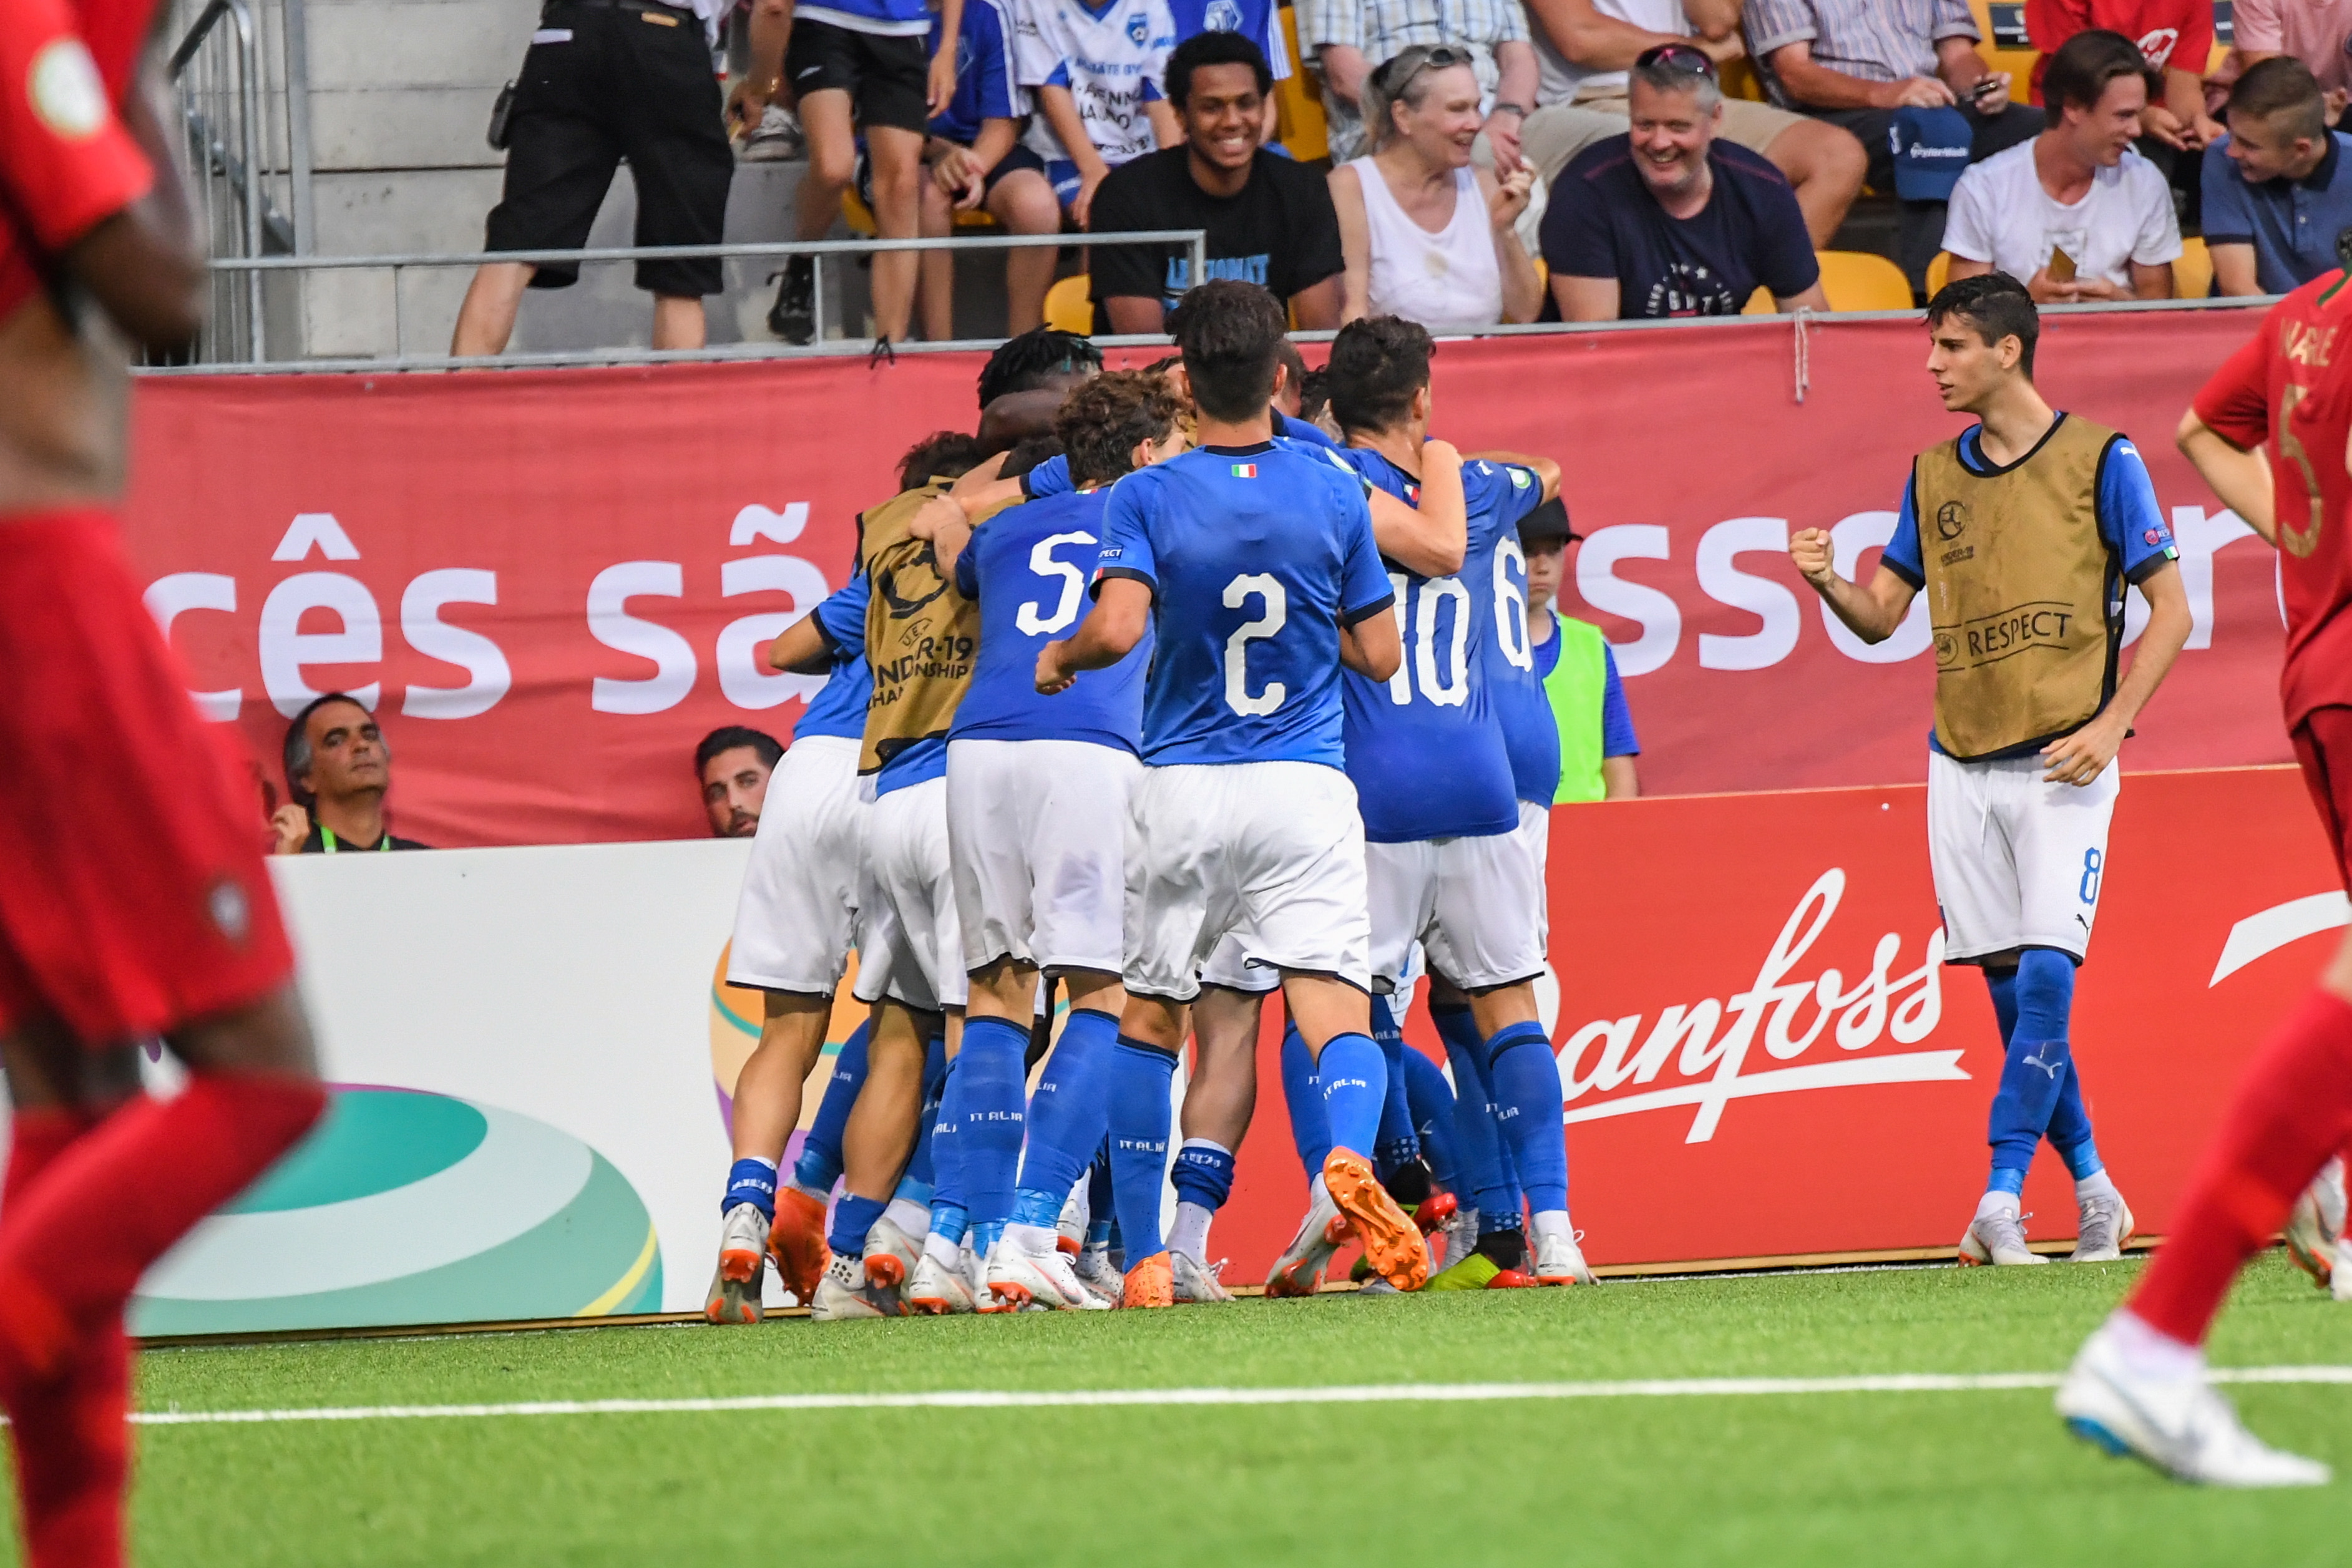 Europeu sub-19: António Costa felicita seleção portuguesa por grande  vitória - EURO Sub 19 - SAPO Desporto